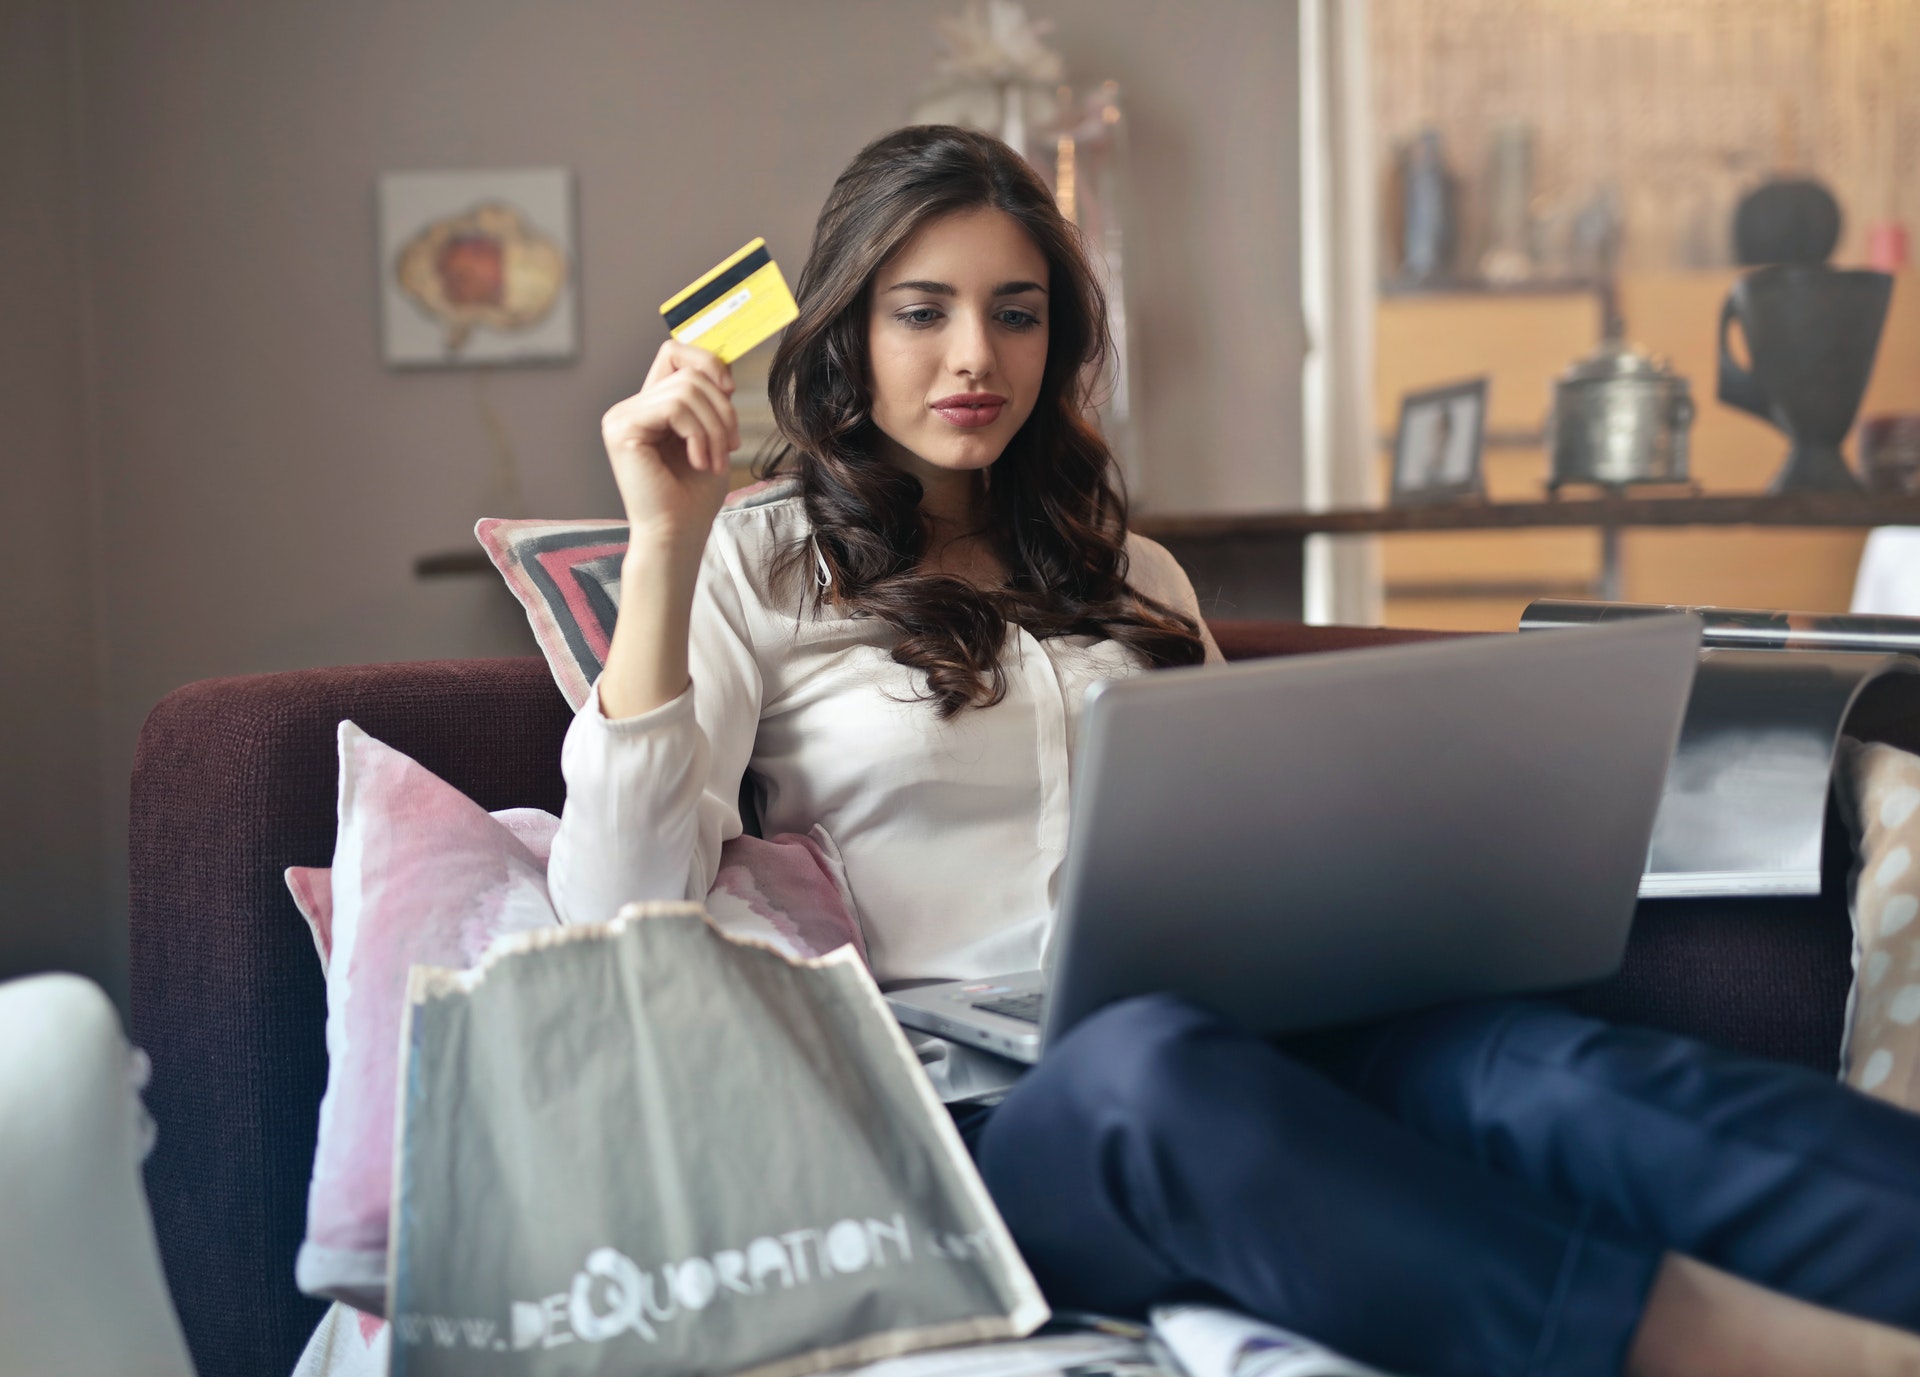 sklep shopping zakupy karta kredytowa debetowa laptop girl dziewczyna woman kobieta komputer PC